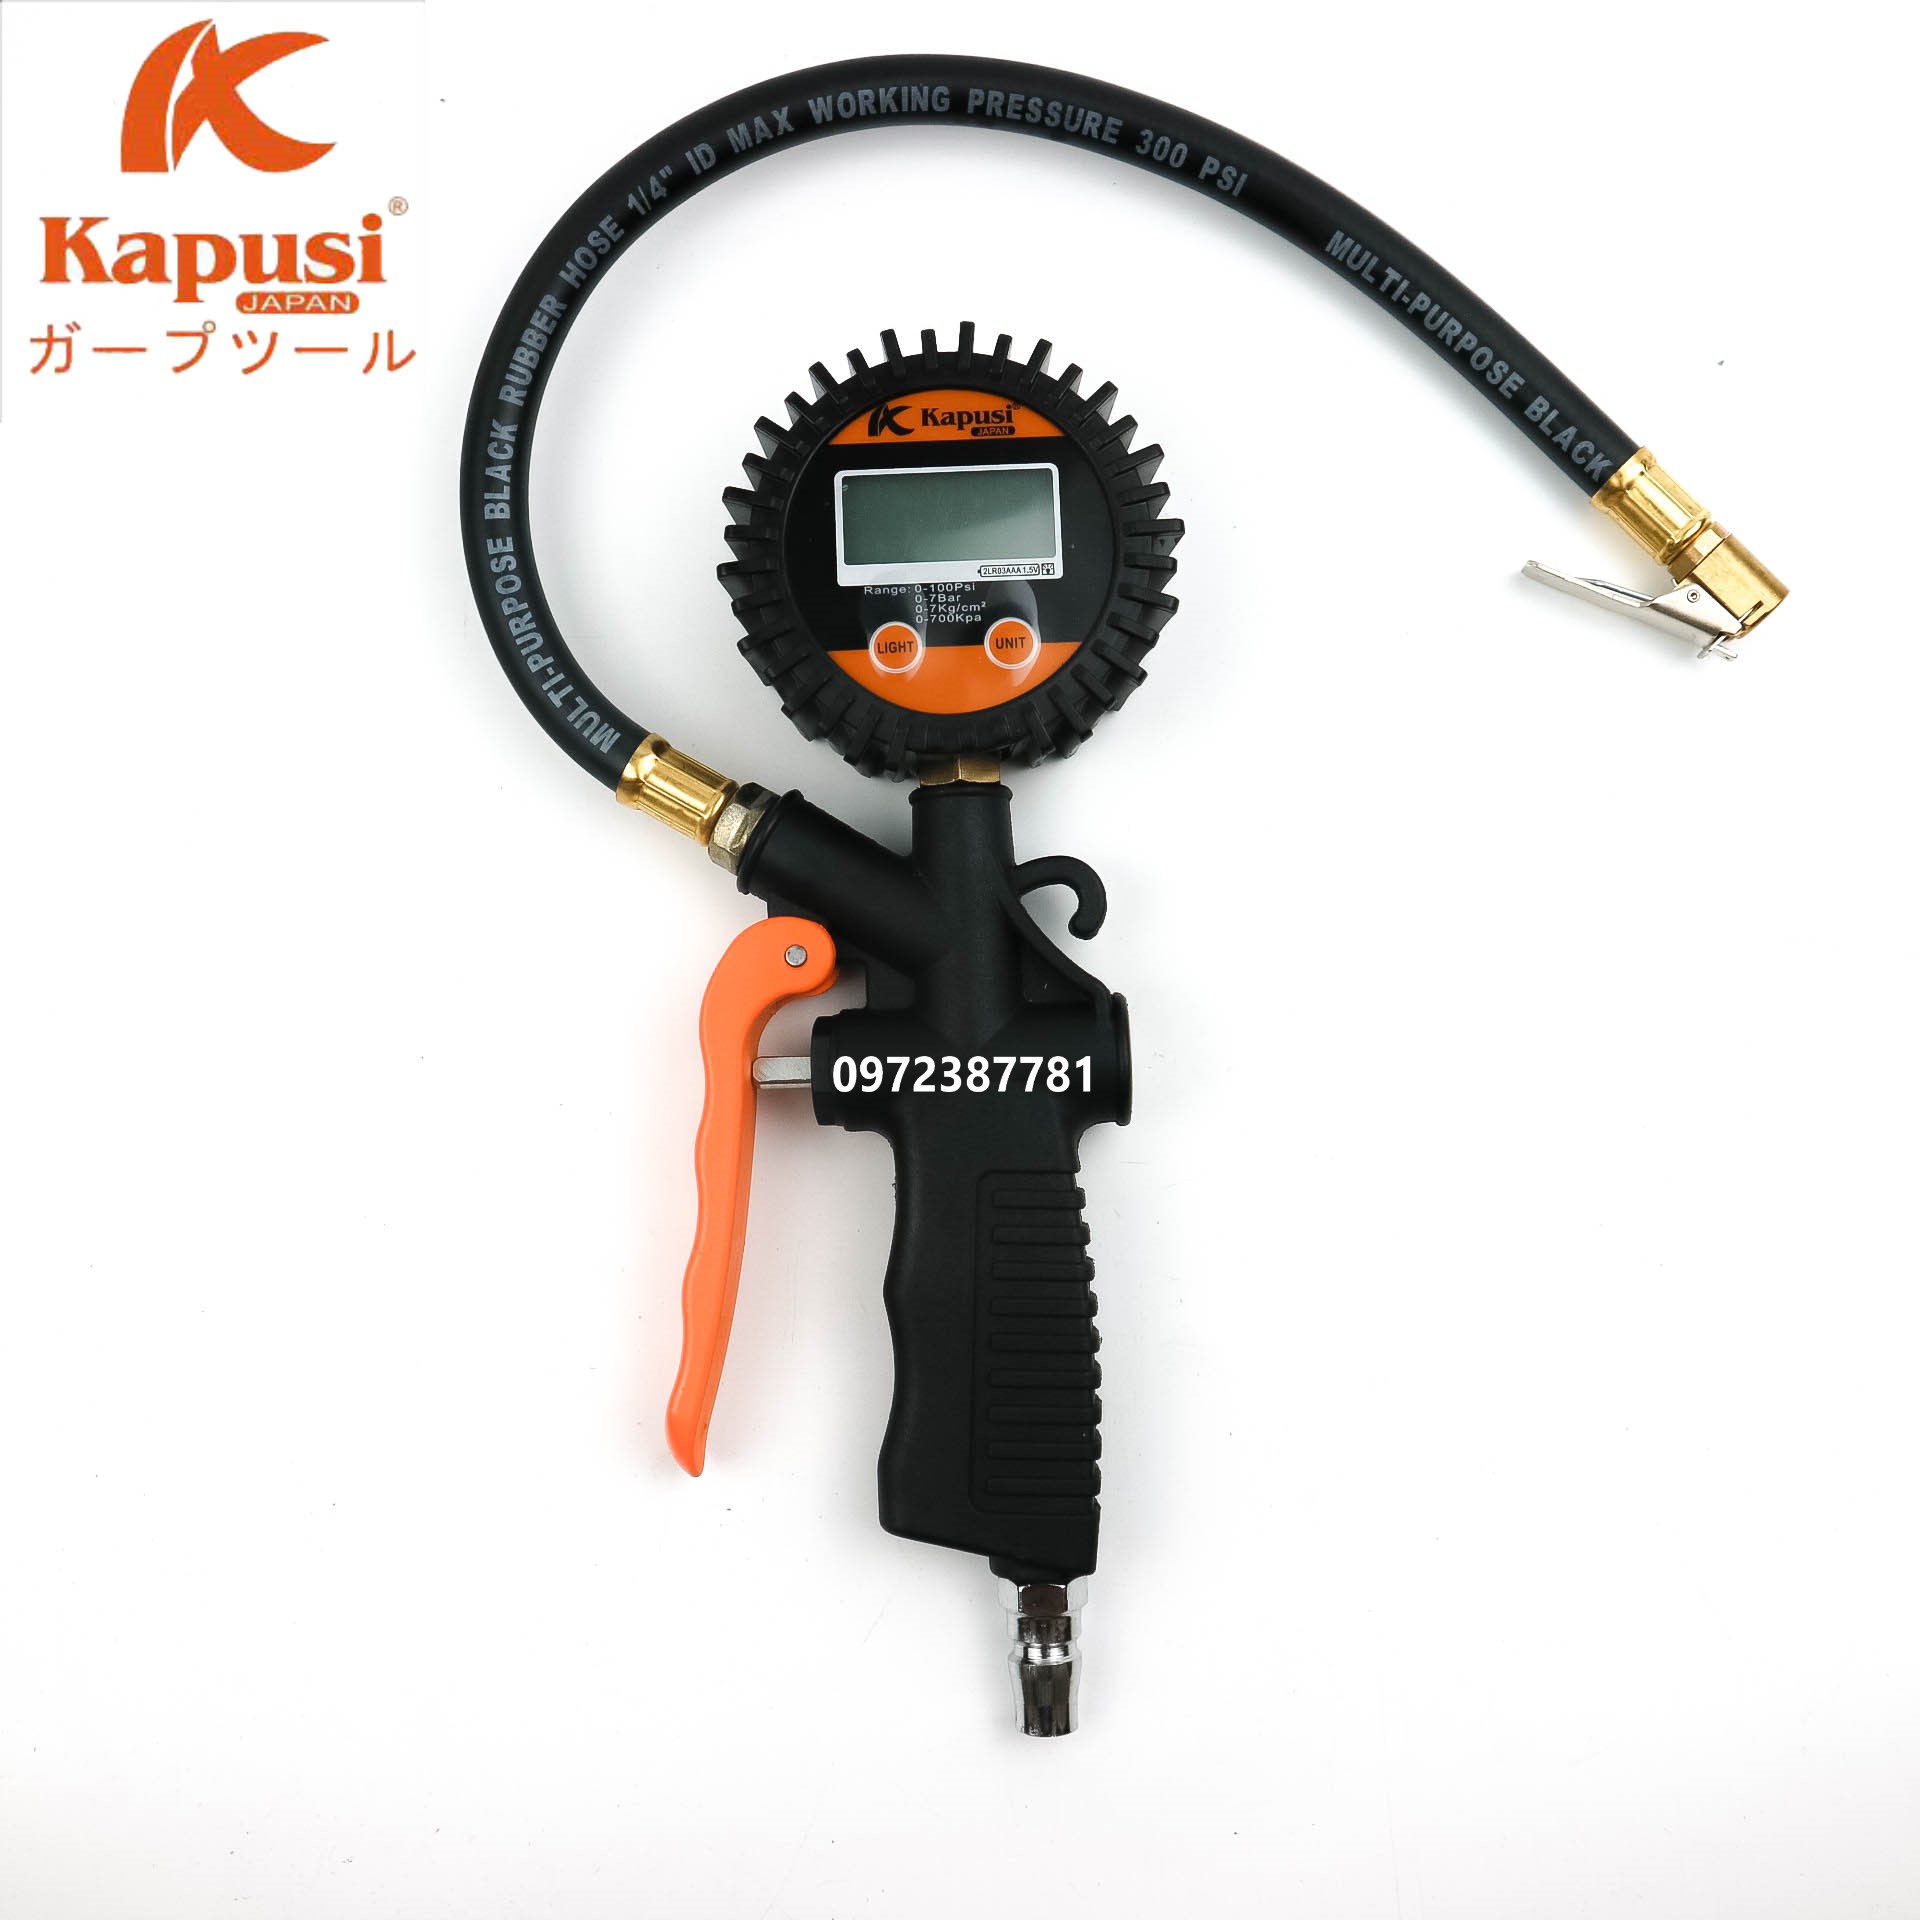 Đồng hồ đo áp suất lốp điện tử K-1090 Kapusi Japan chính hãng